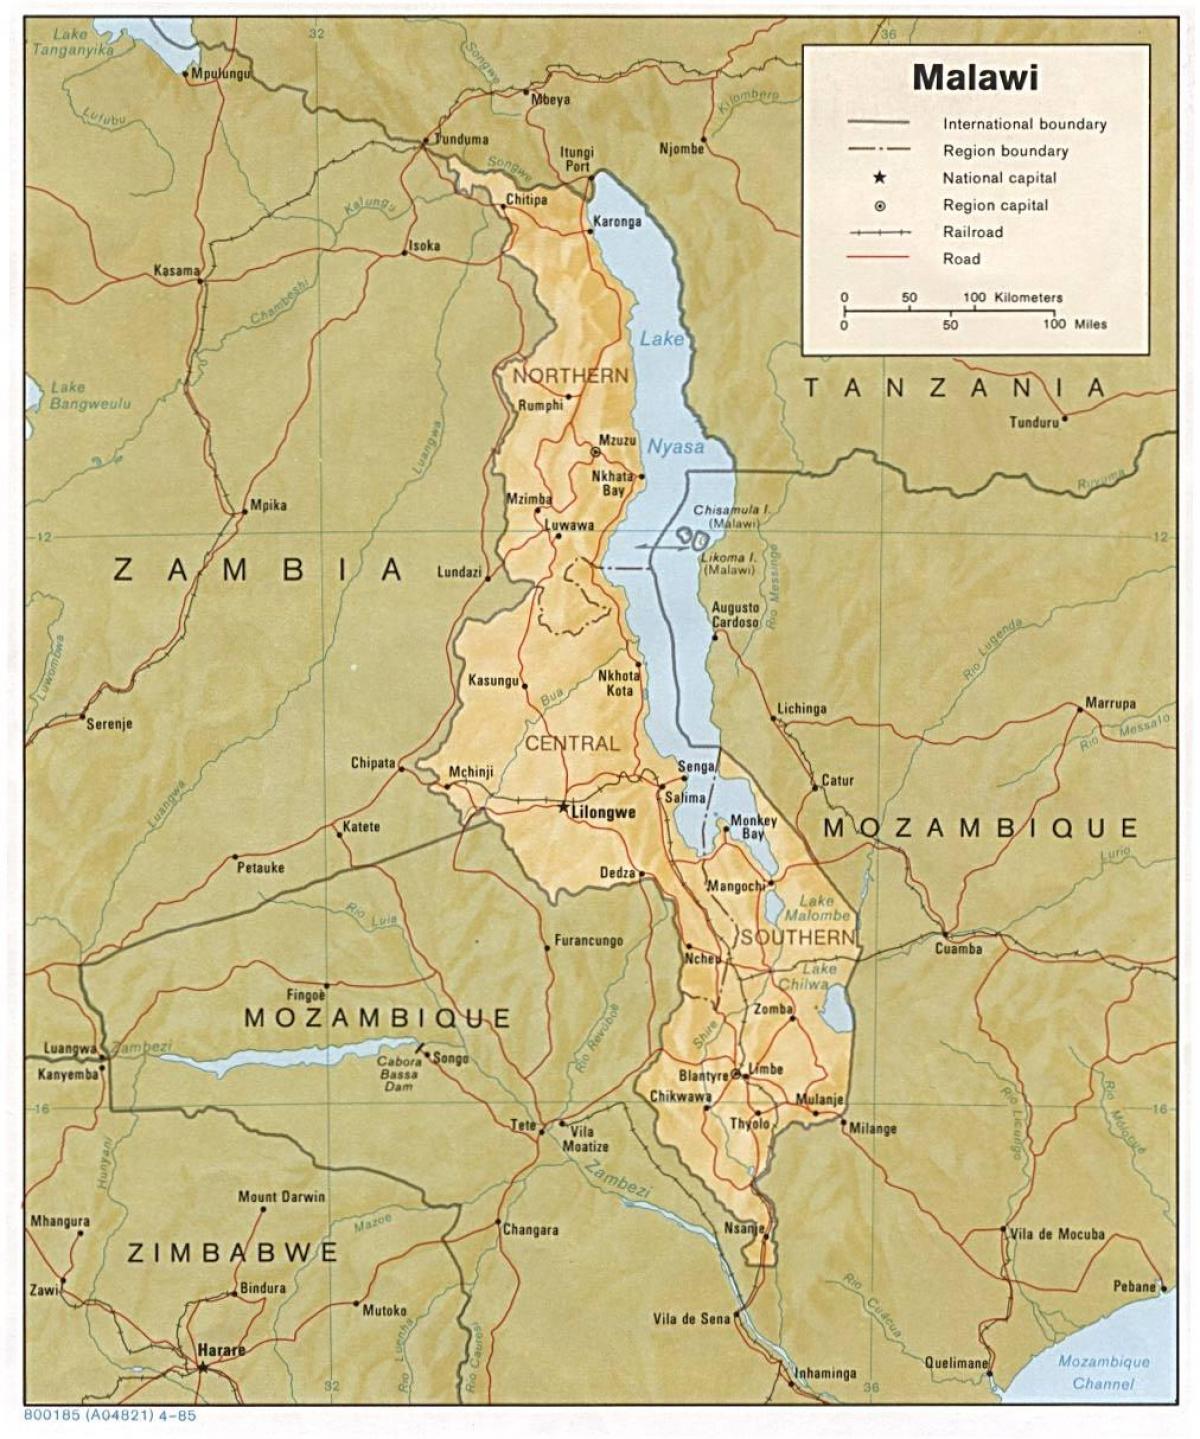 lake Malawi on map